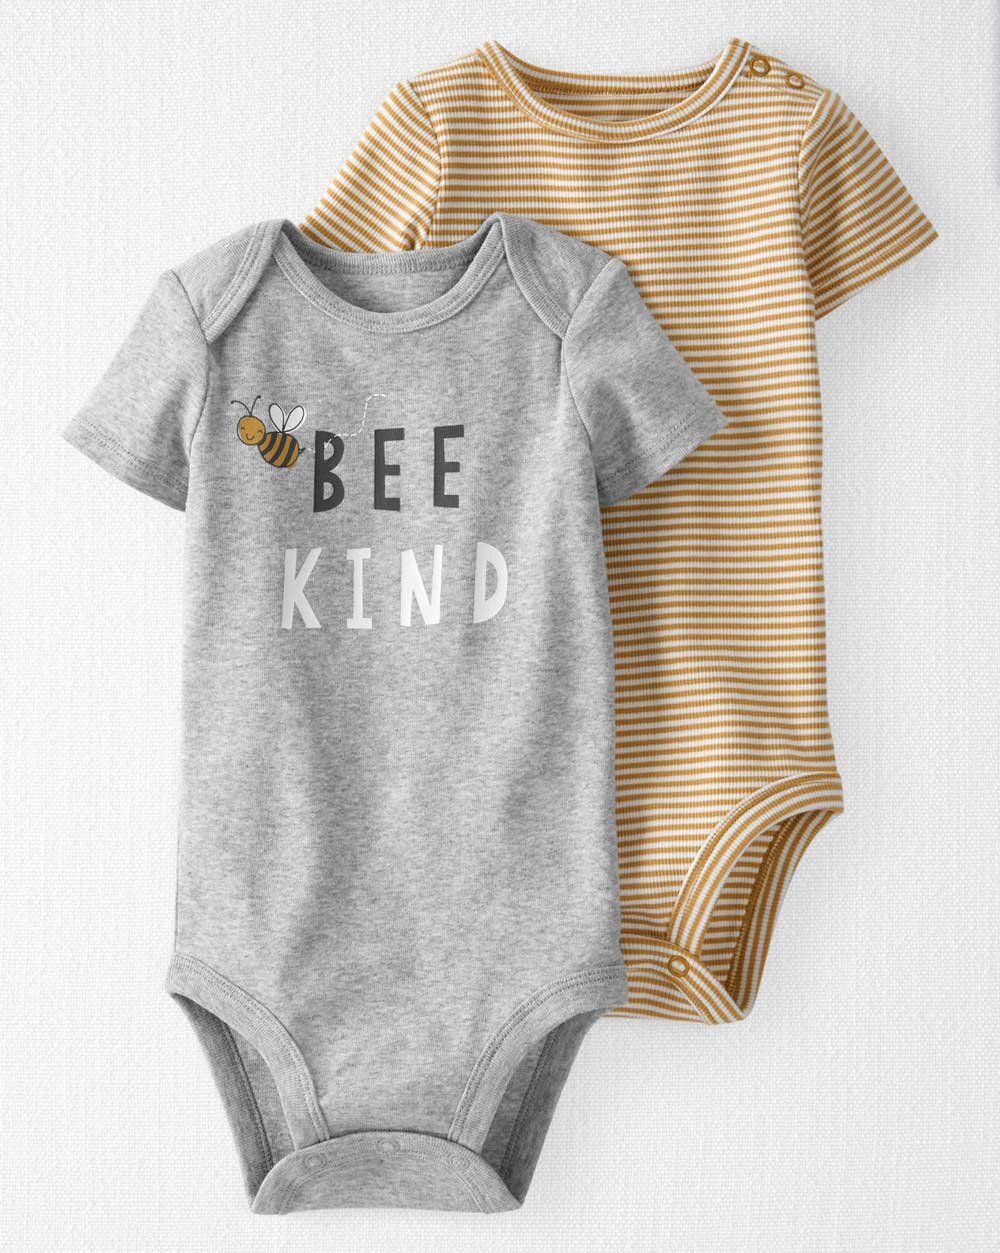 Bee Kind baby onesie